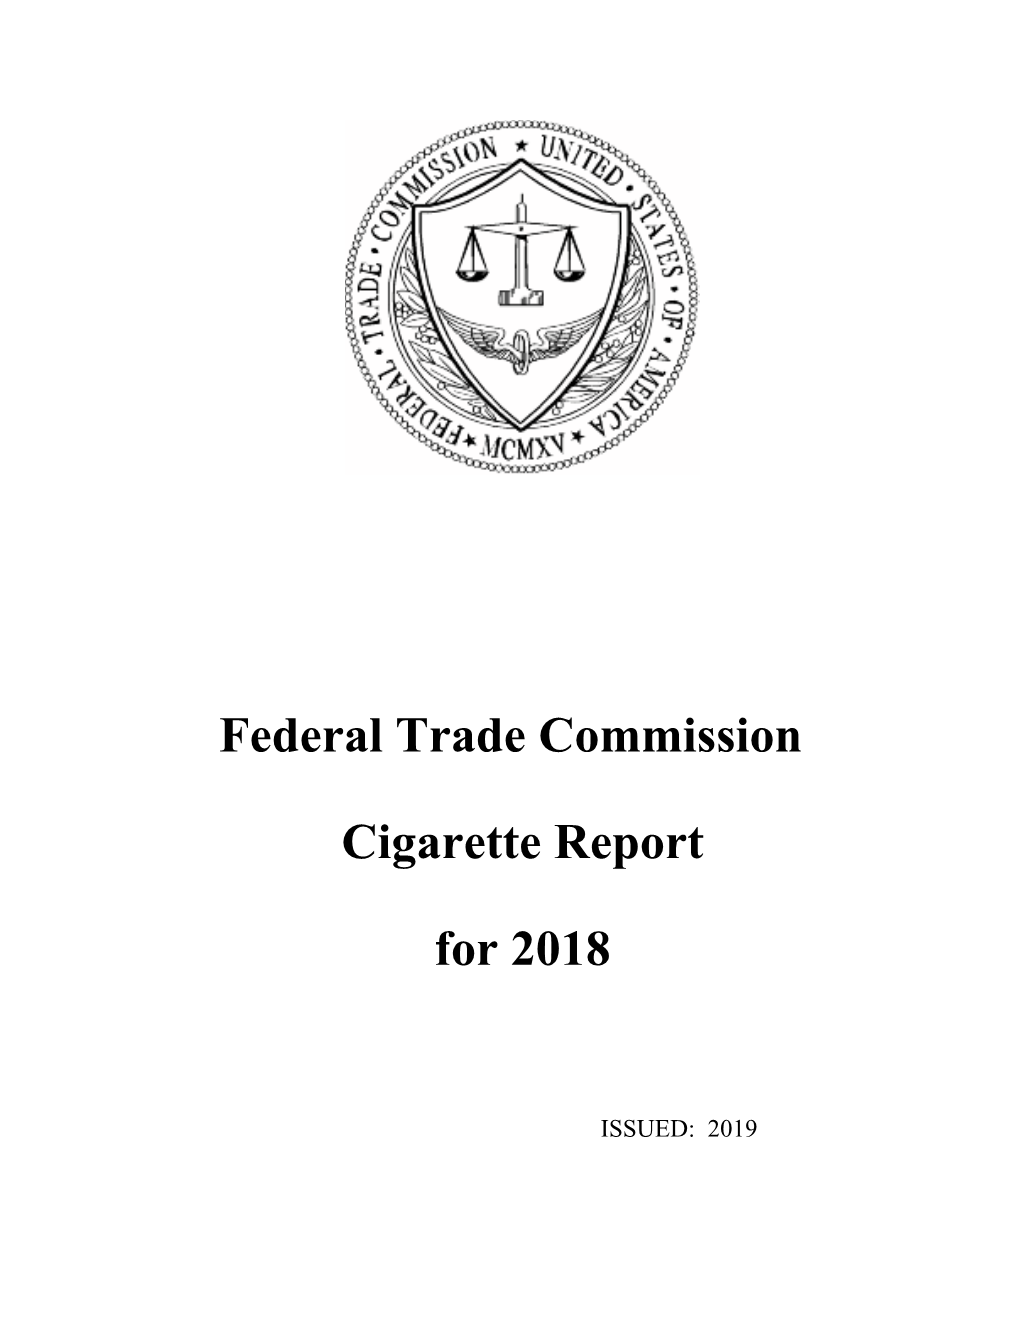 Cigarette Report